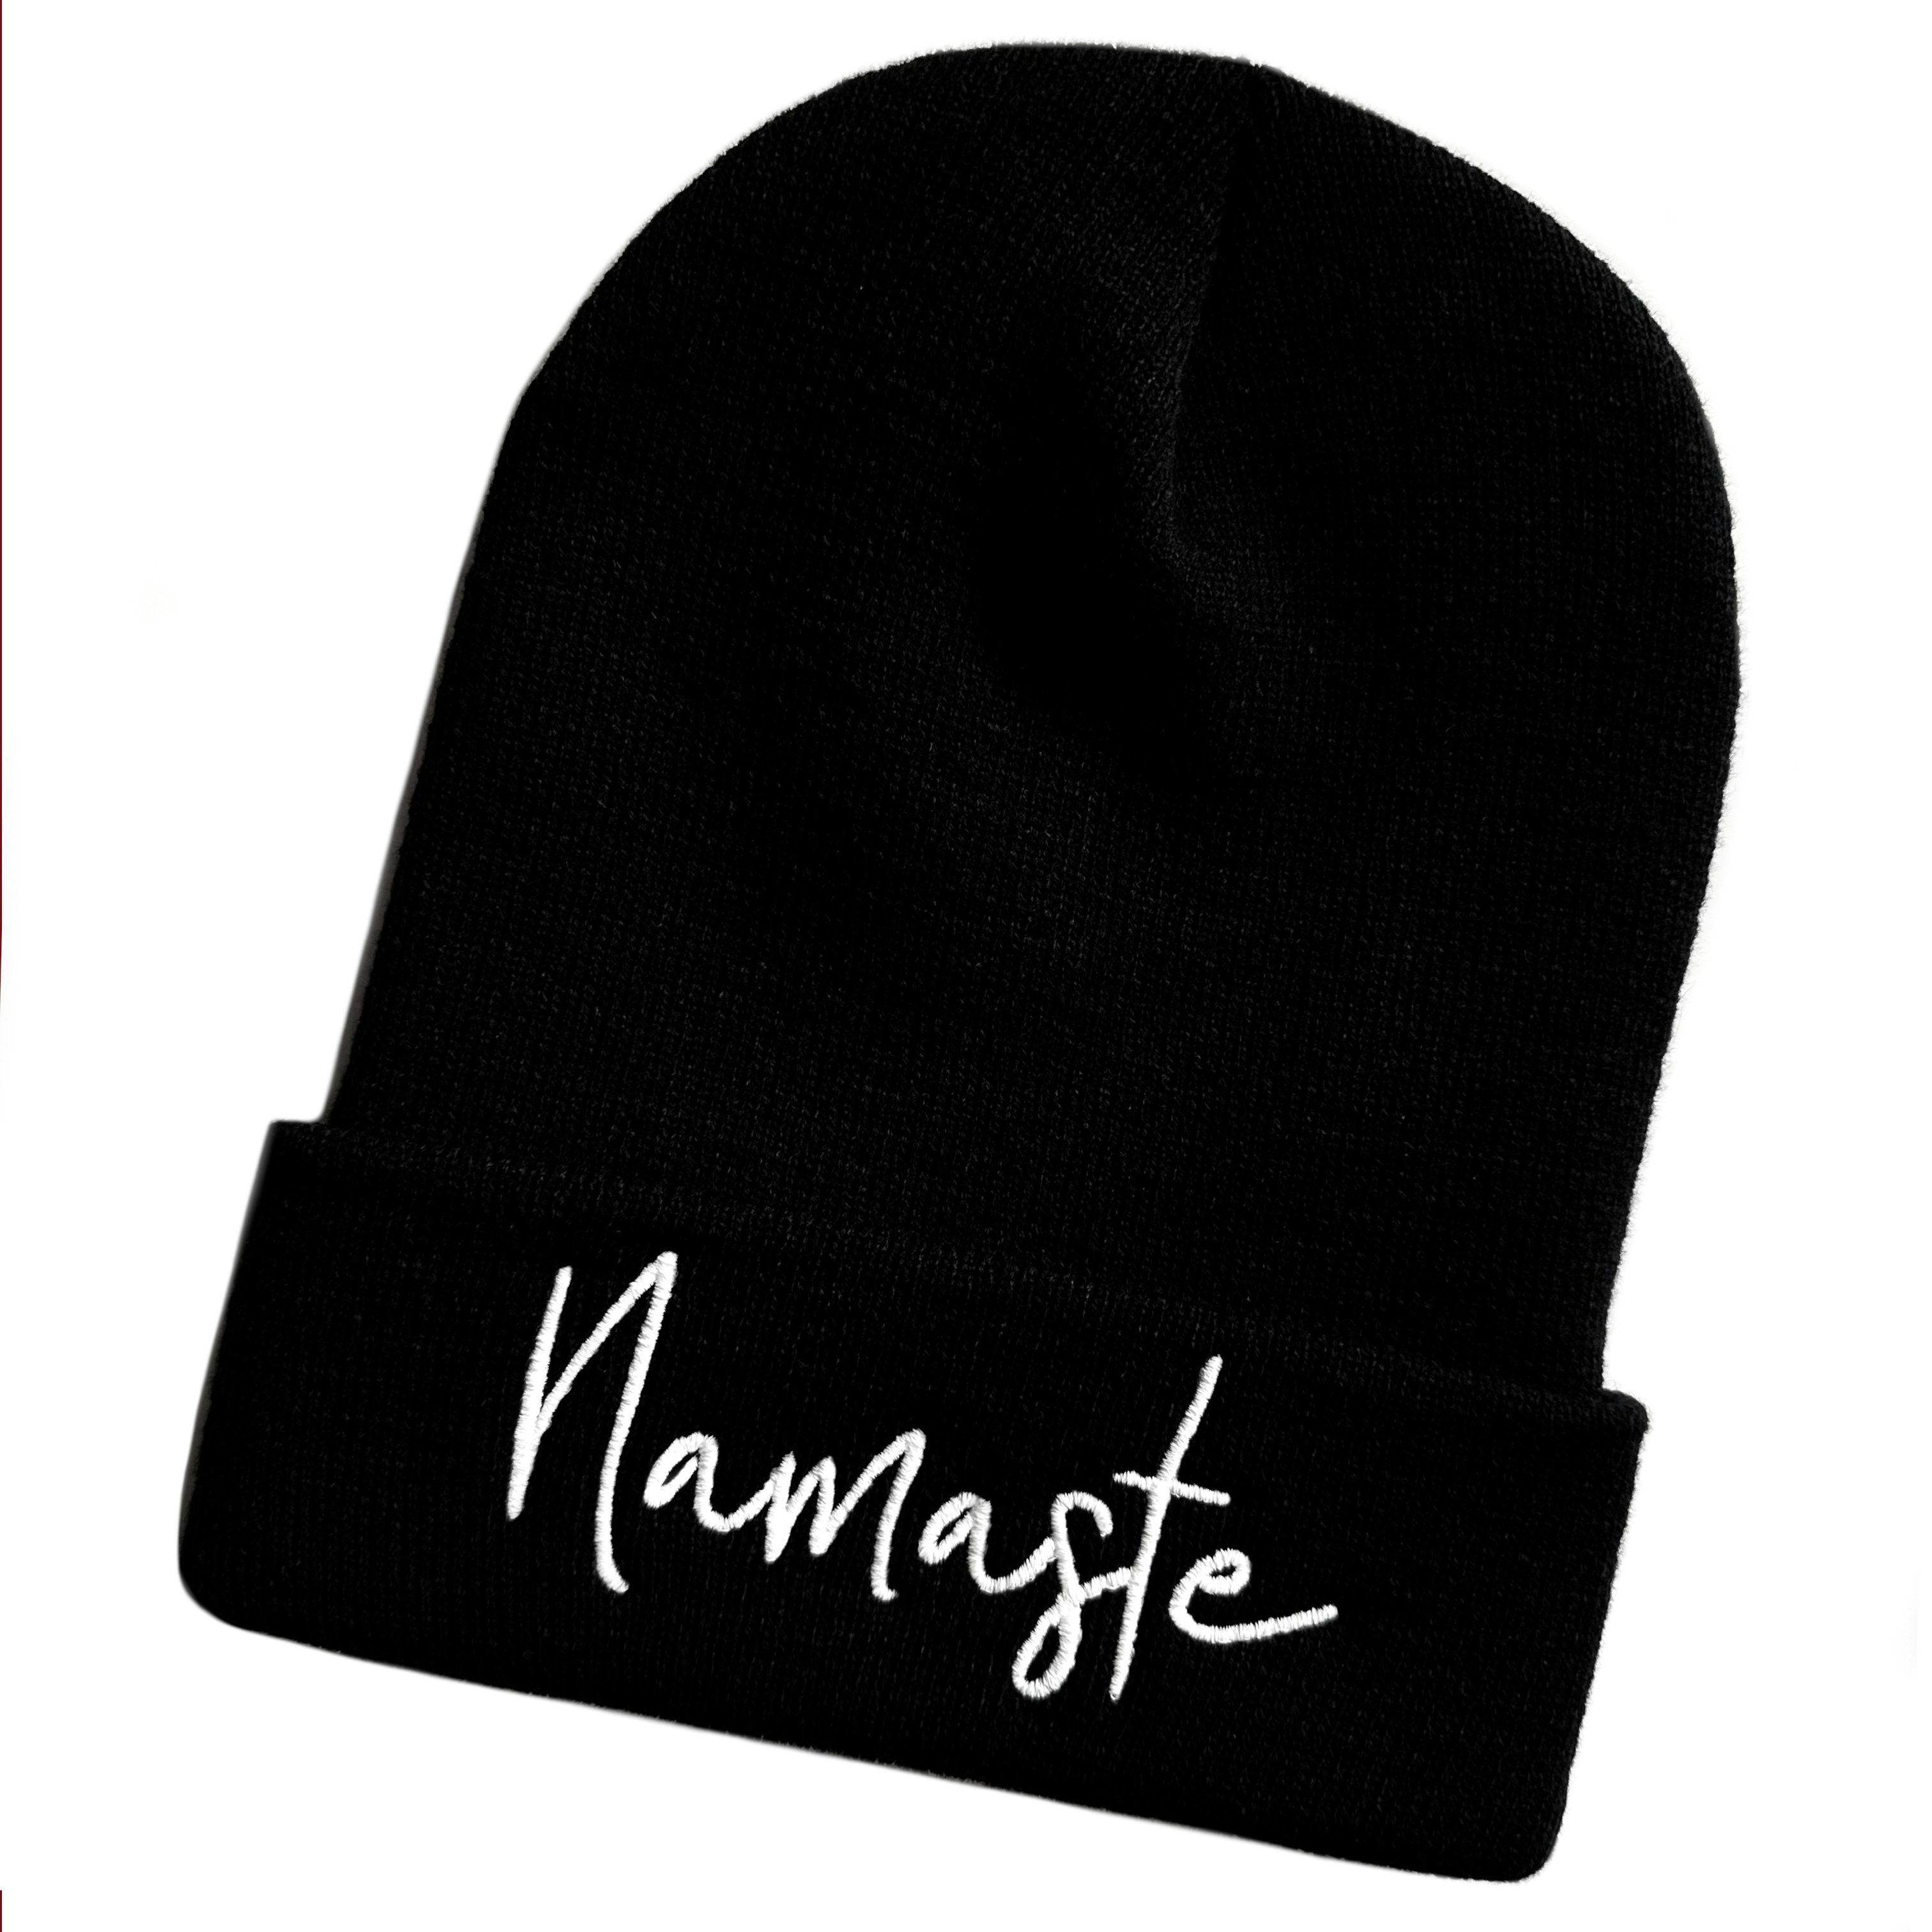 Schnoschi Strickmütze Wintermütze Namaste (Beanie Mütze) bestickt Yoga Streetwear Unisex mit breitem Umschlag